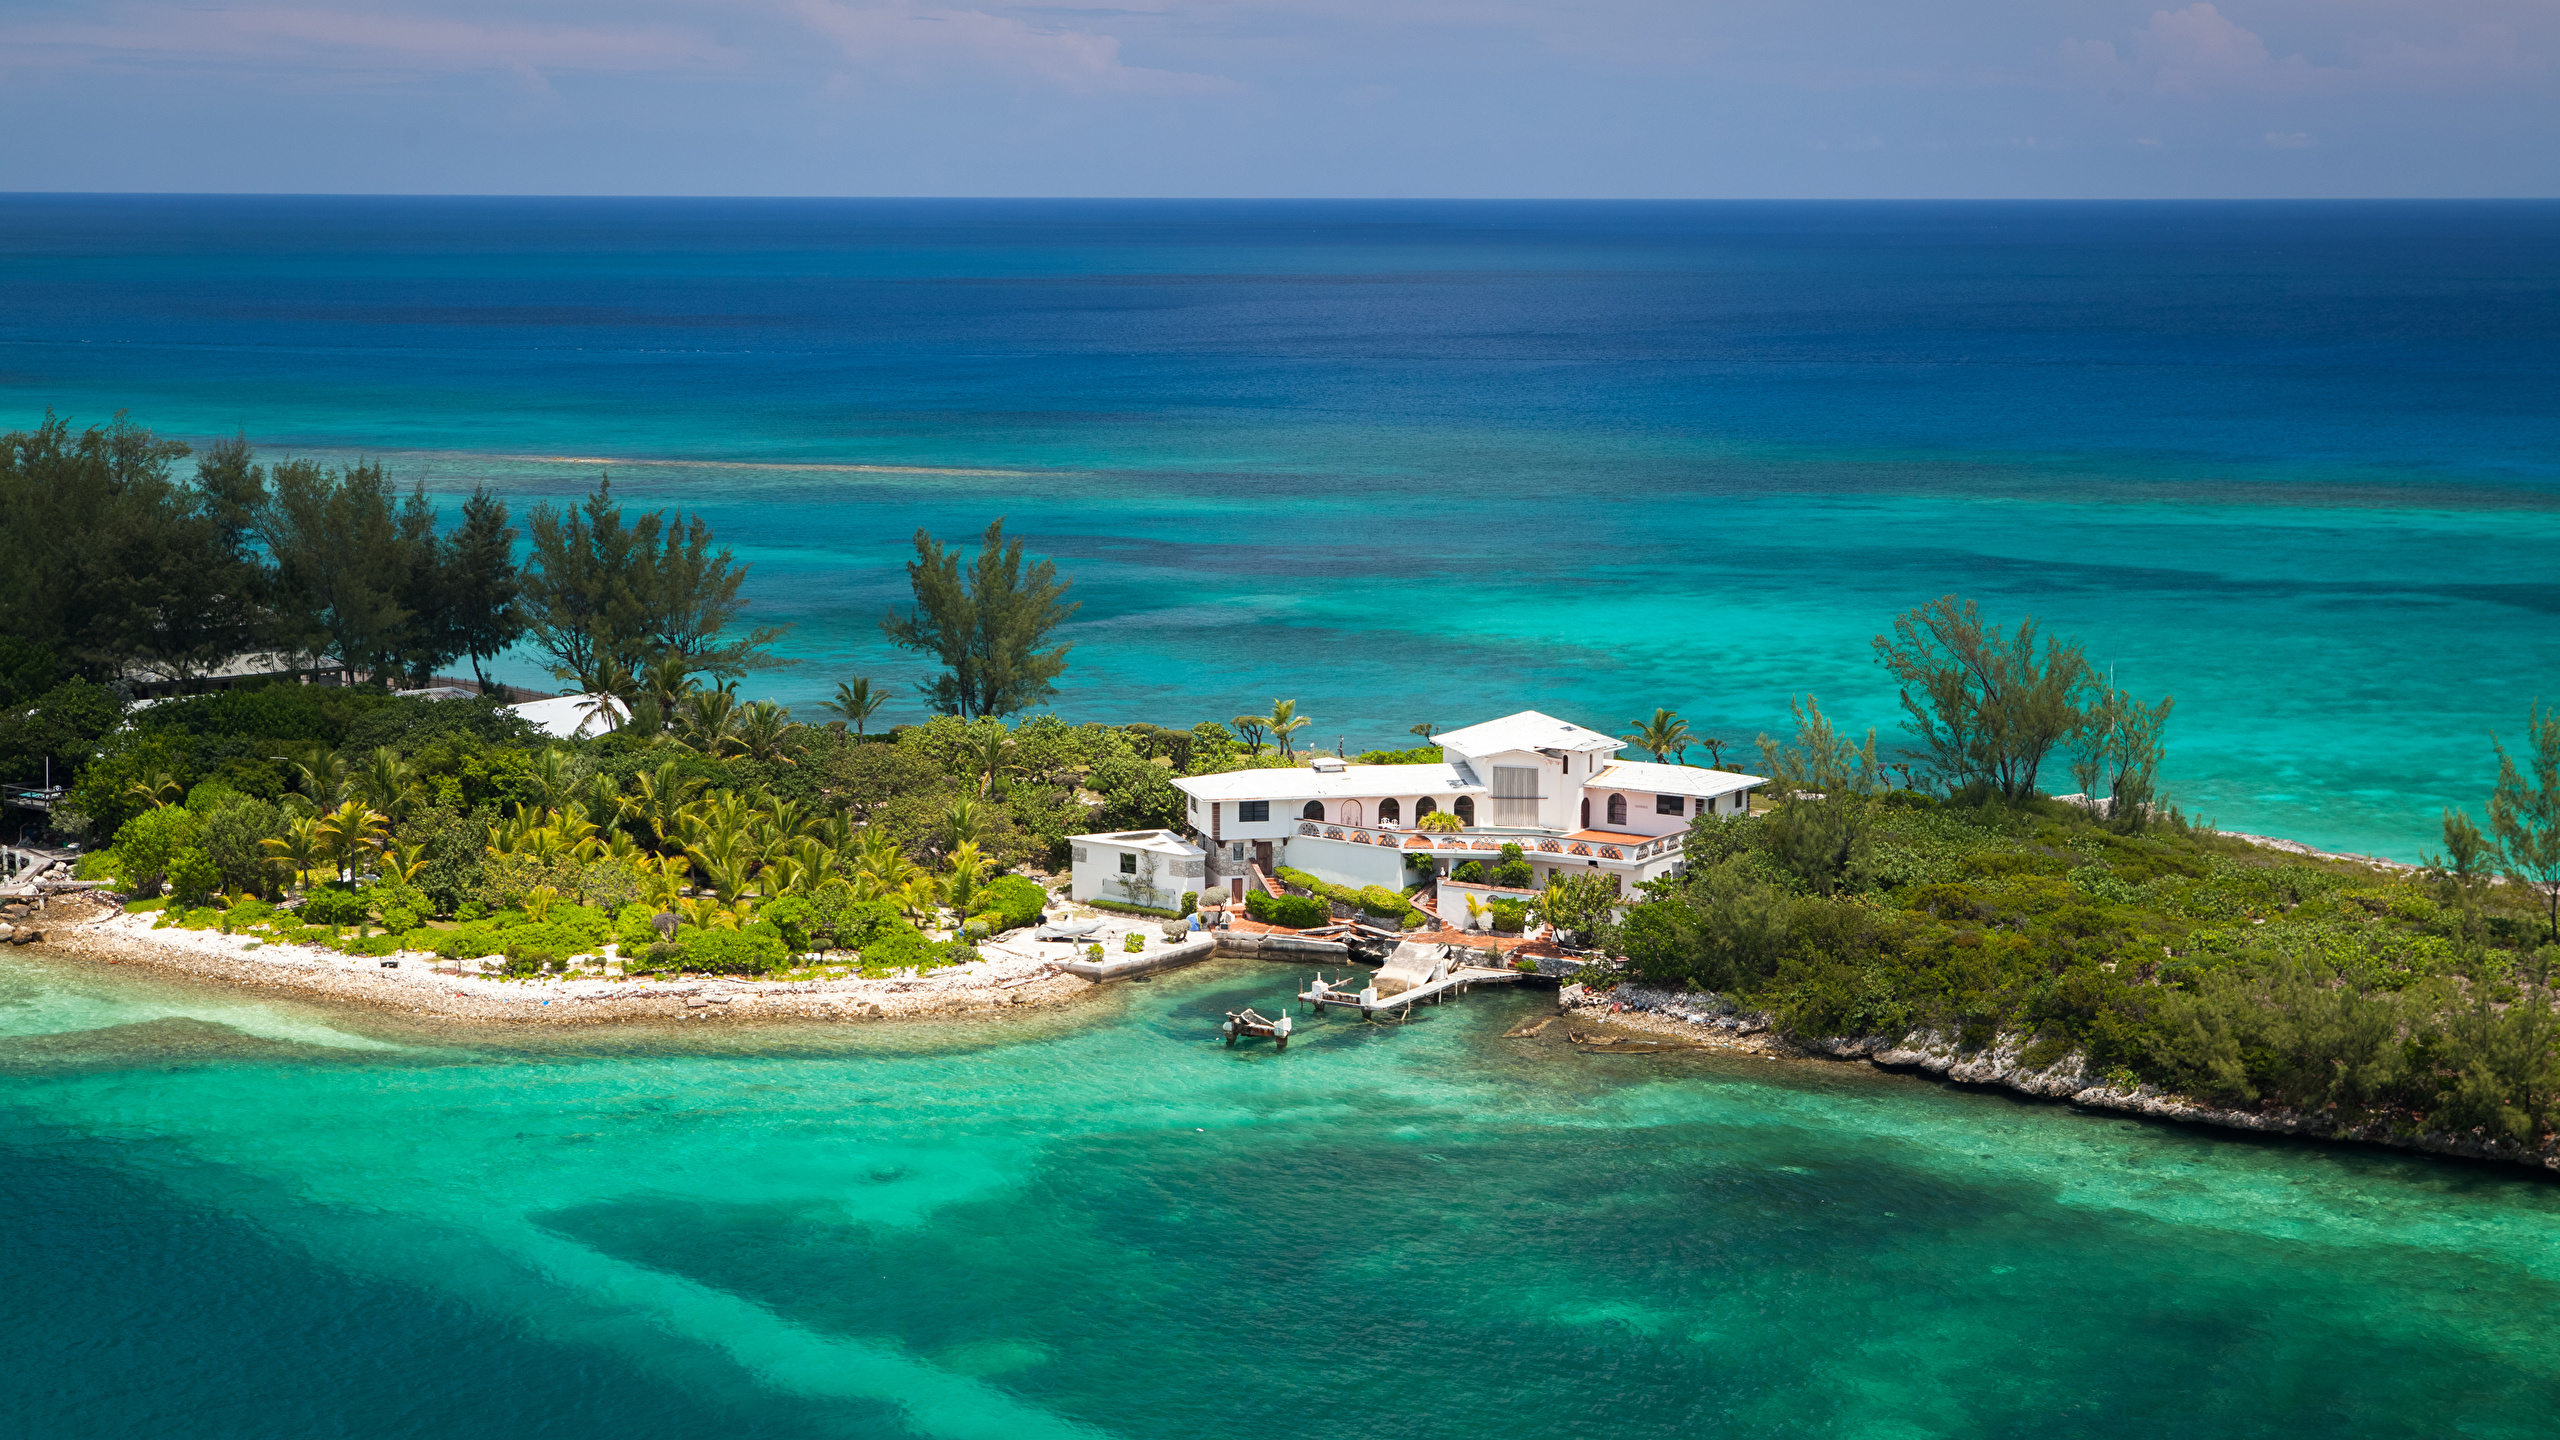 壁紙 2560x1440 熱帯 リゾート 海岸 住宅 桟橋 Nassau Bahamas 自然 ダウンロード 写真